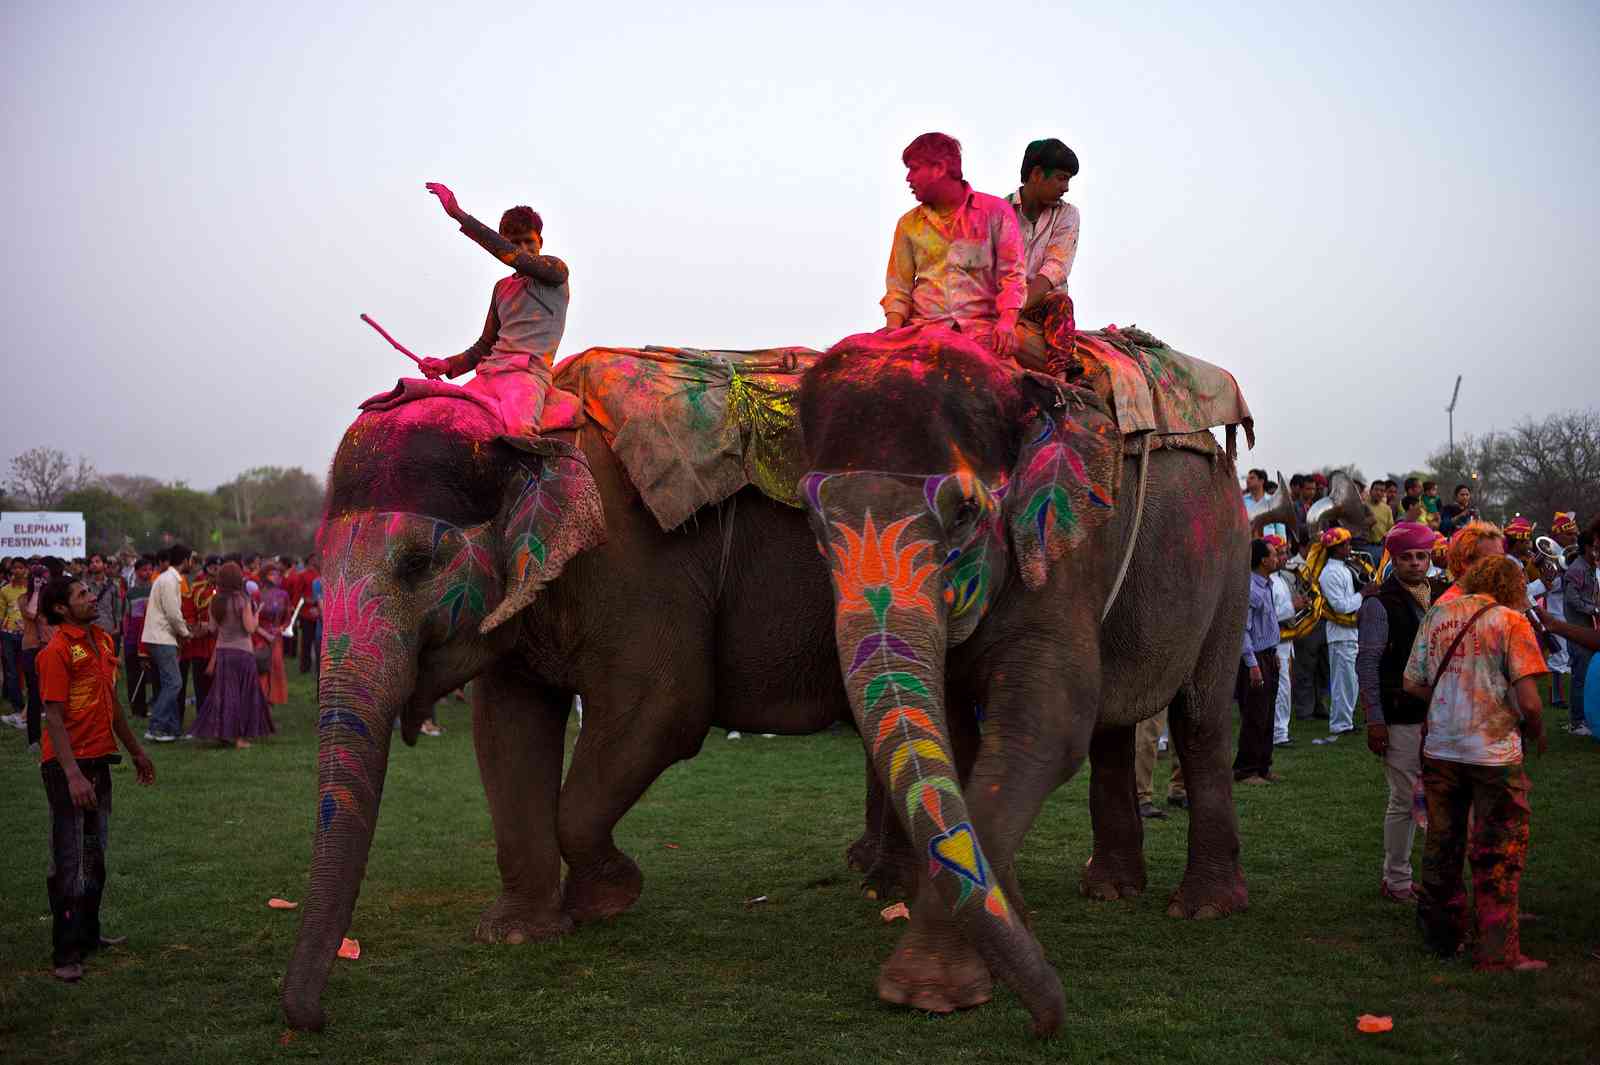 राजस्थान के कोटा का चंद्रमहल, हाथियों वाली होली..बेहद मनोरंजक था रियासत काल का वो दौर